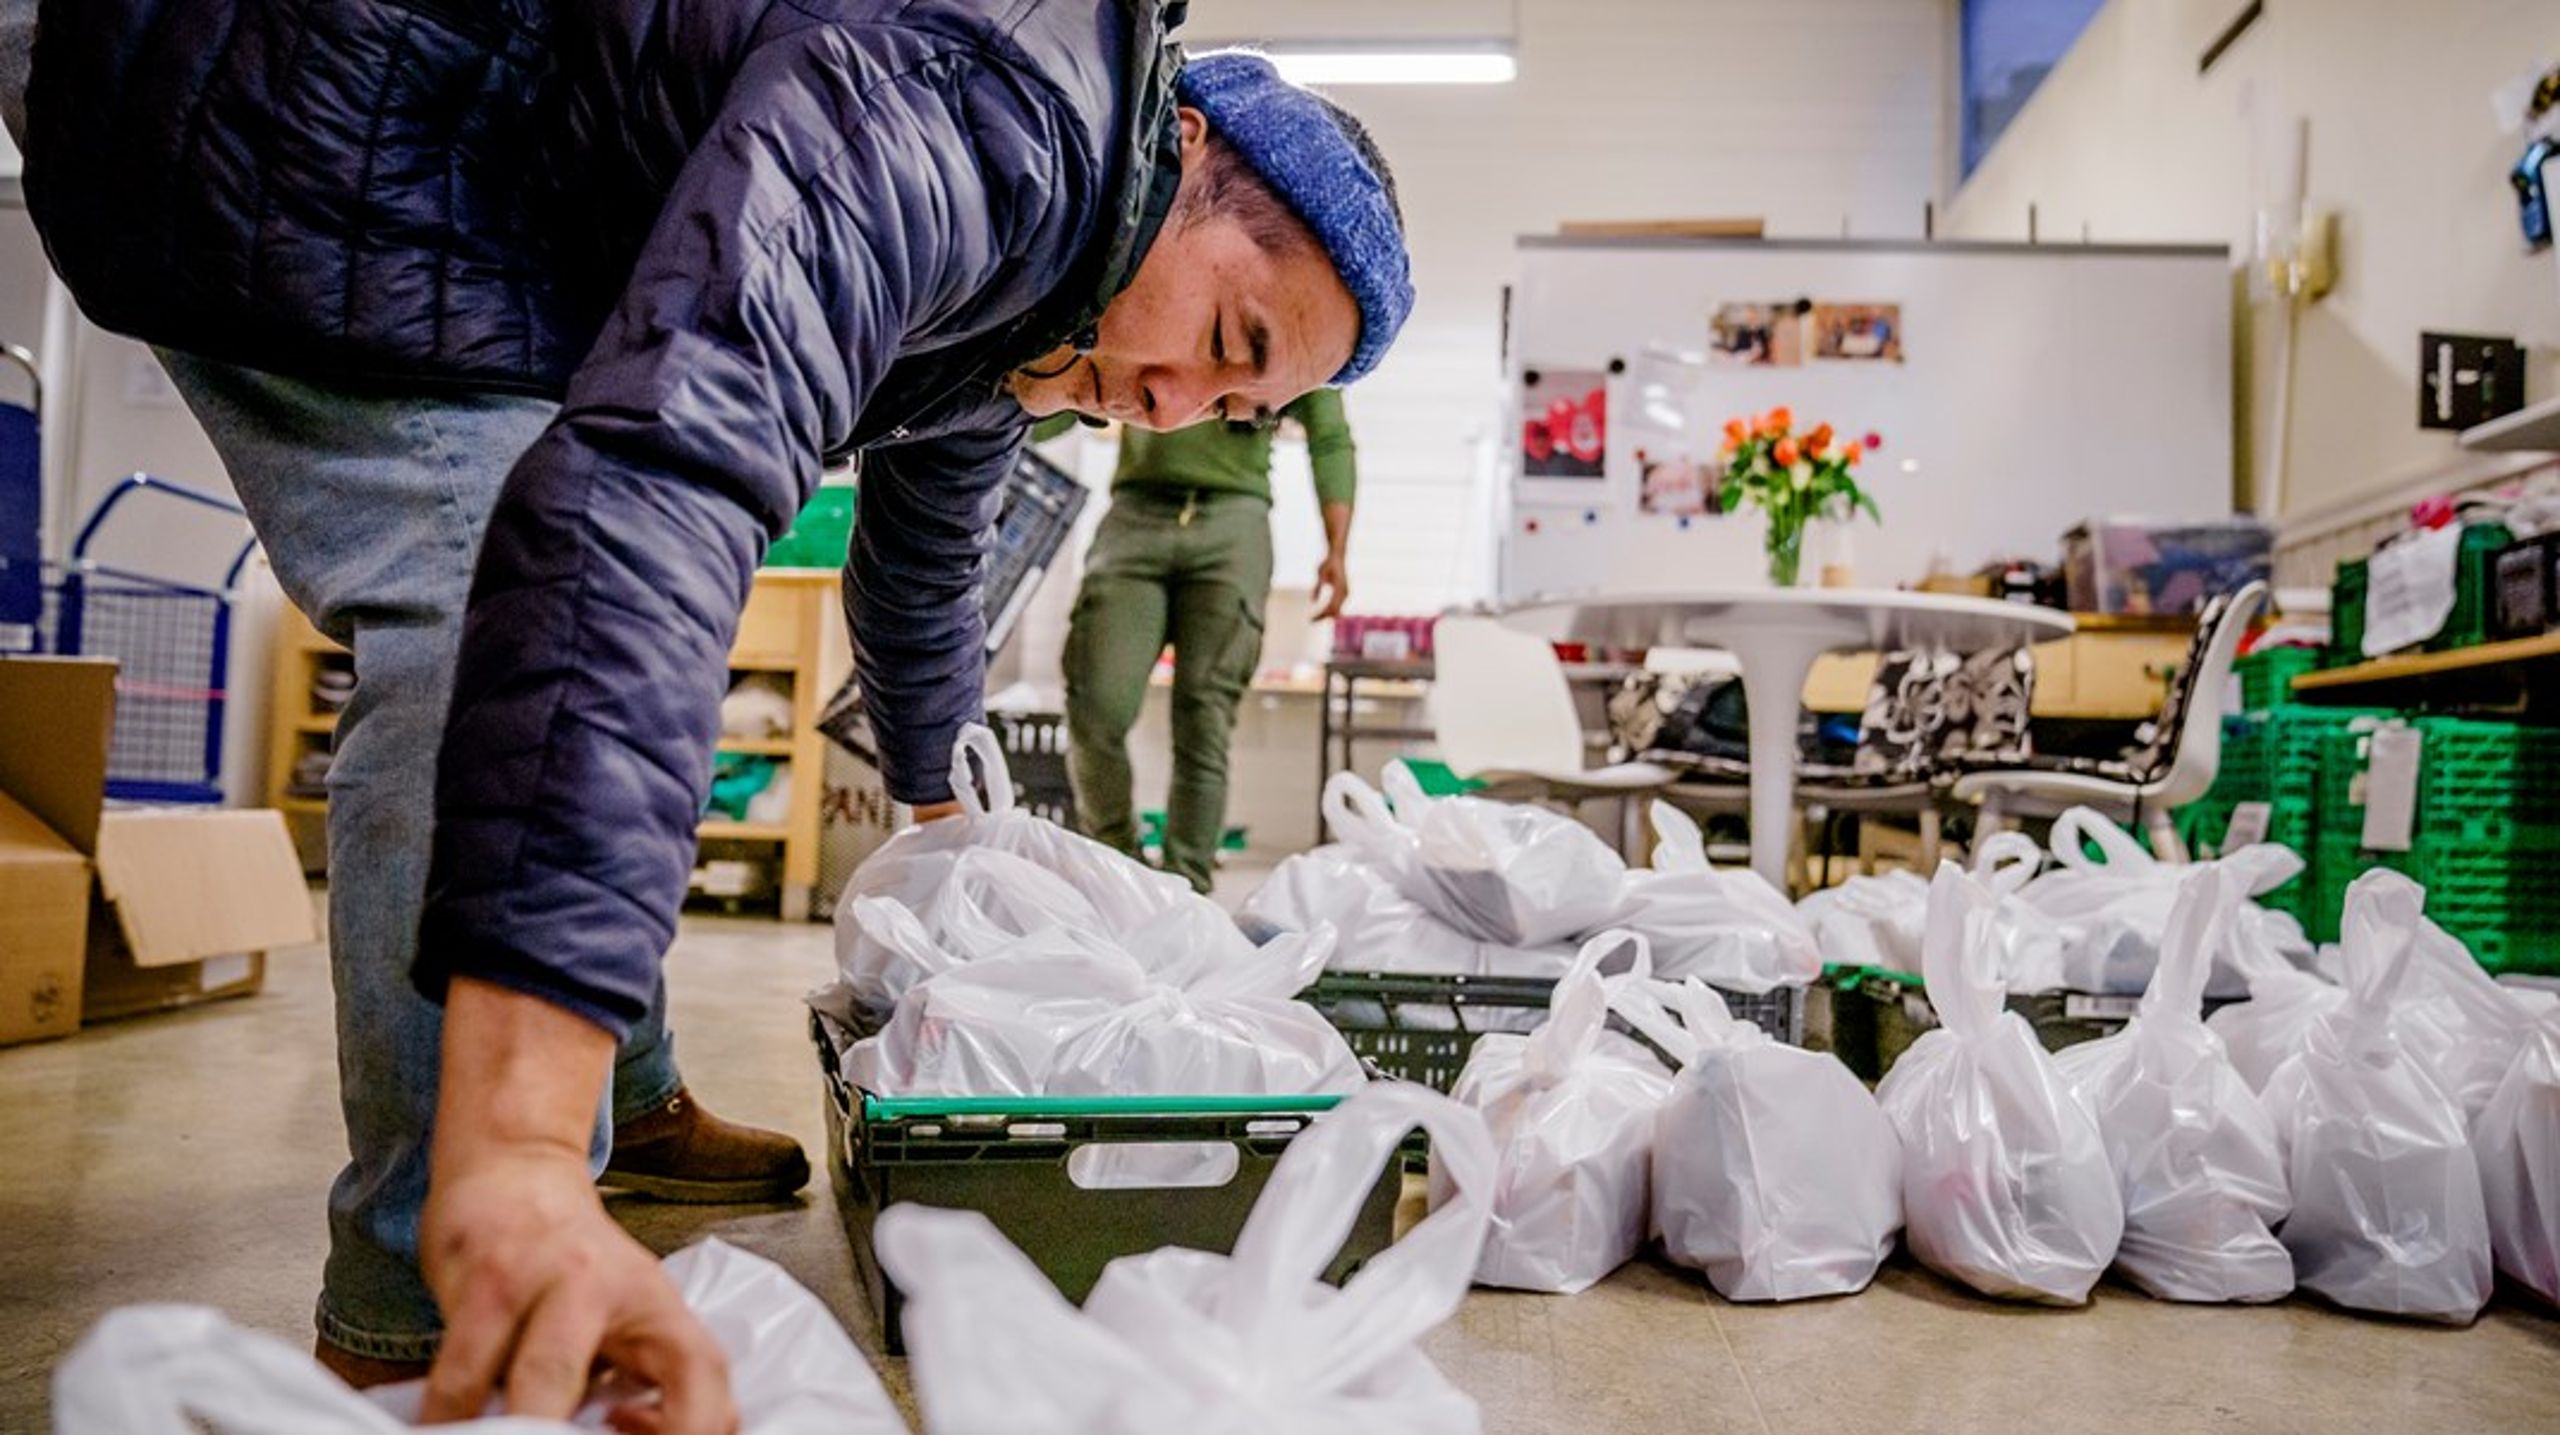 Frelsesarmeens slumstasjon i Oslo pakker matposer til trengende brukere i hjemmehjelpstjenesten. Mange har måtte ty til denne typen tilbud for å klare seg i det siste, skriver NAV-sjefen.